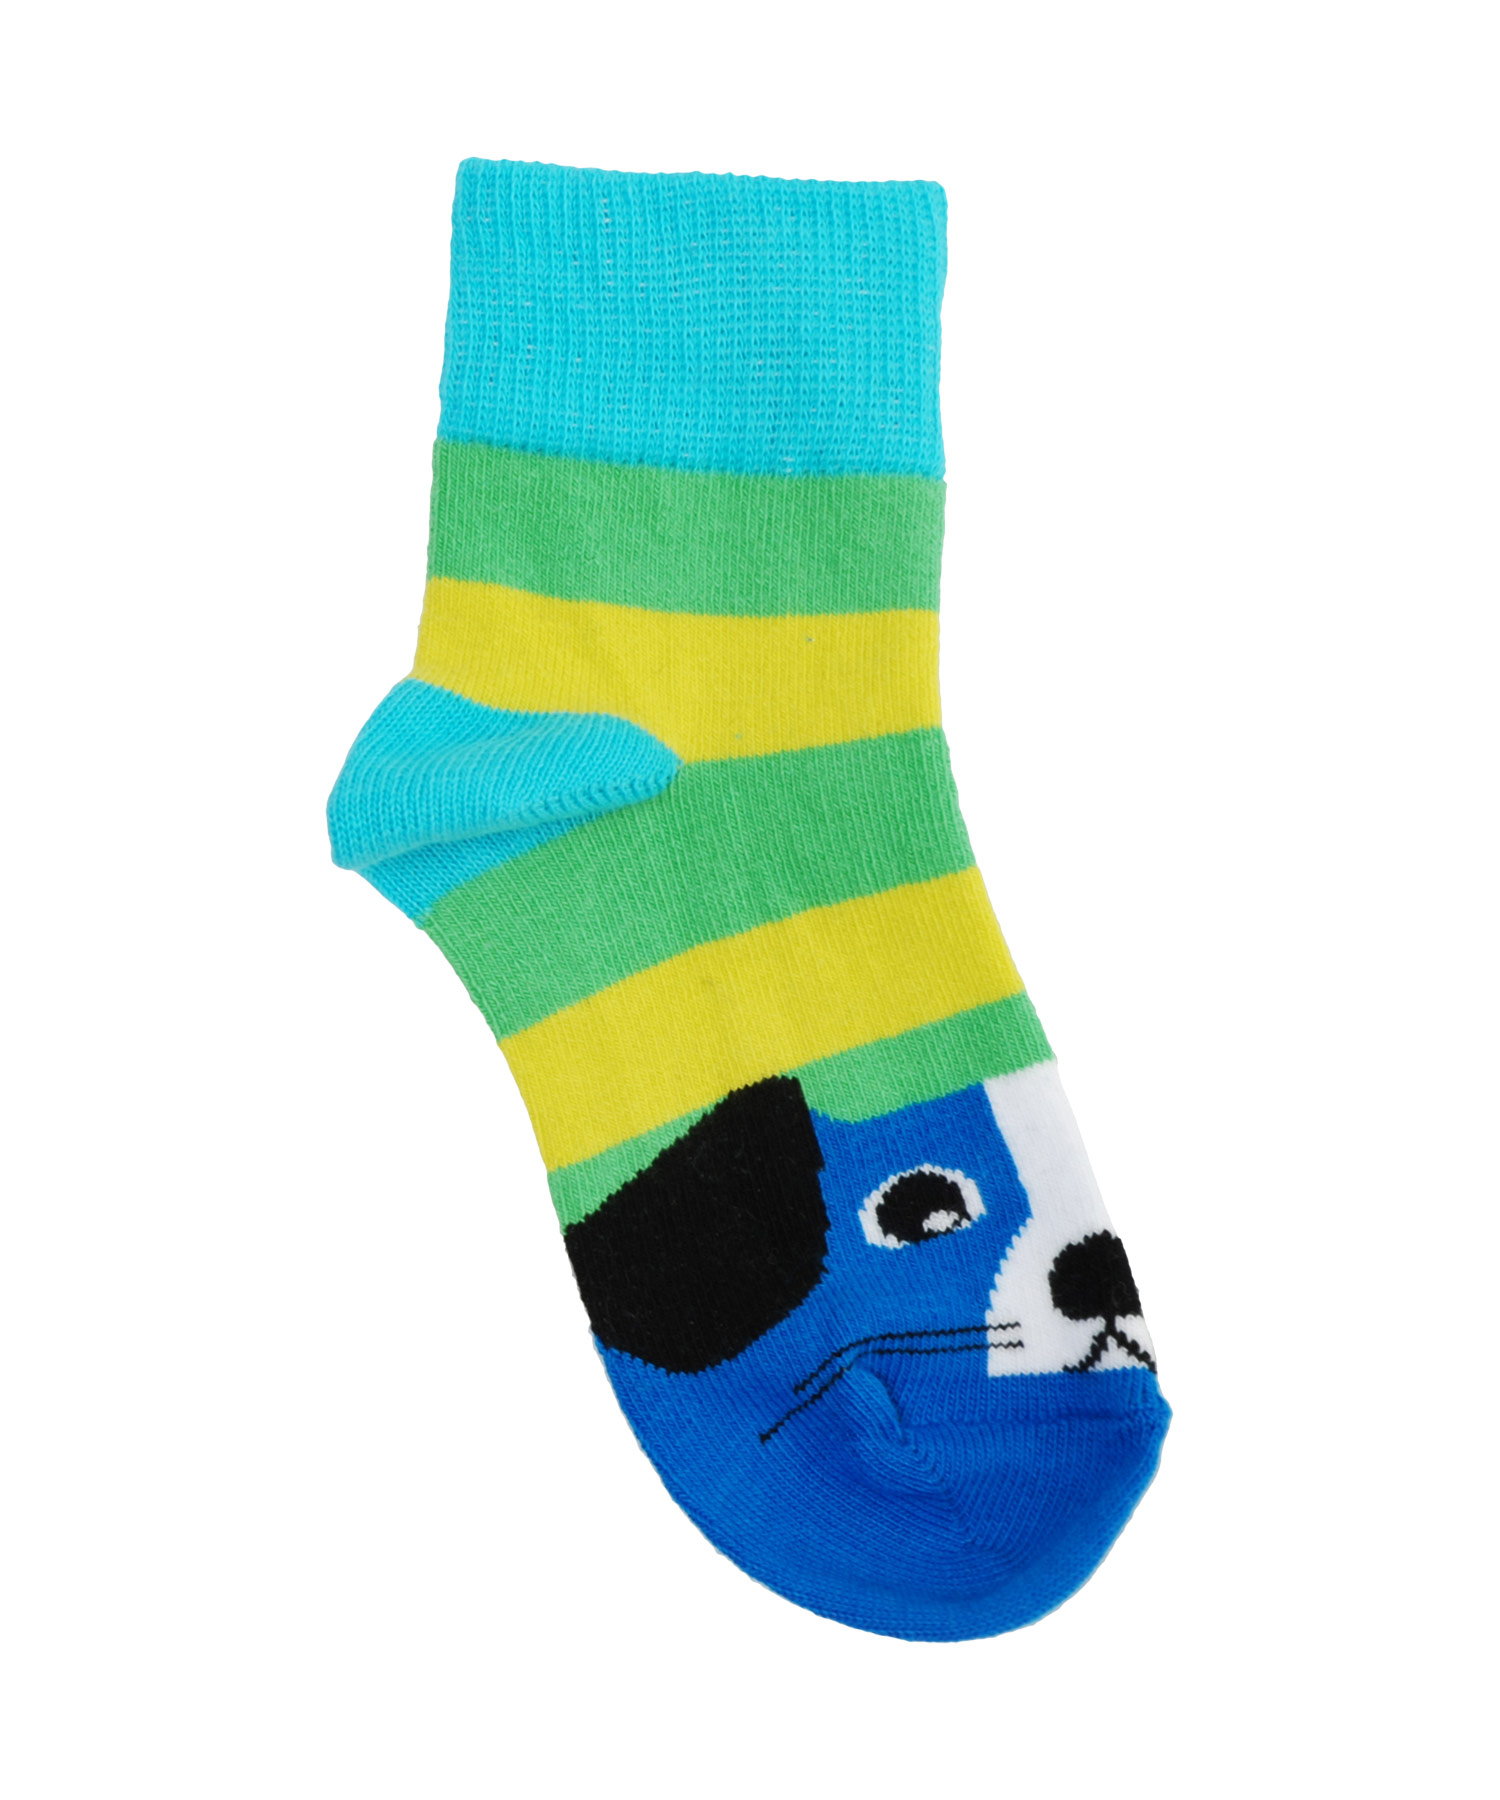 Actief verantwoordelijkheid definitief Nieuw! Duns of Sweden schattige blauwe sokken met hondenprint (Ankle socks)